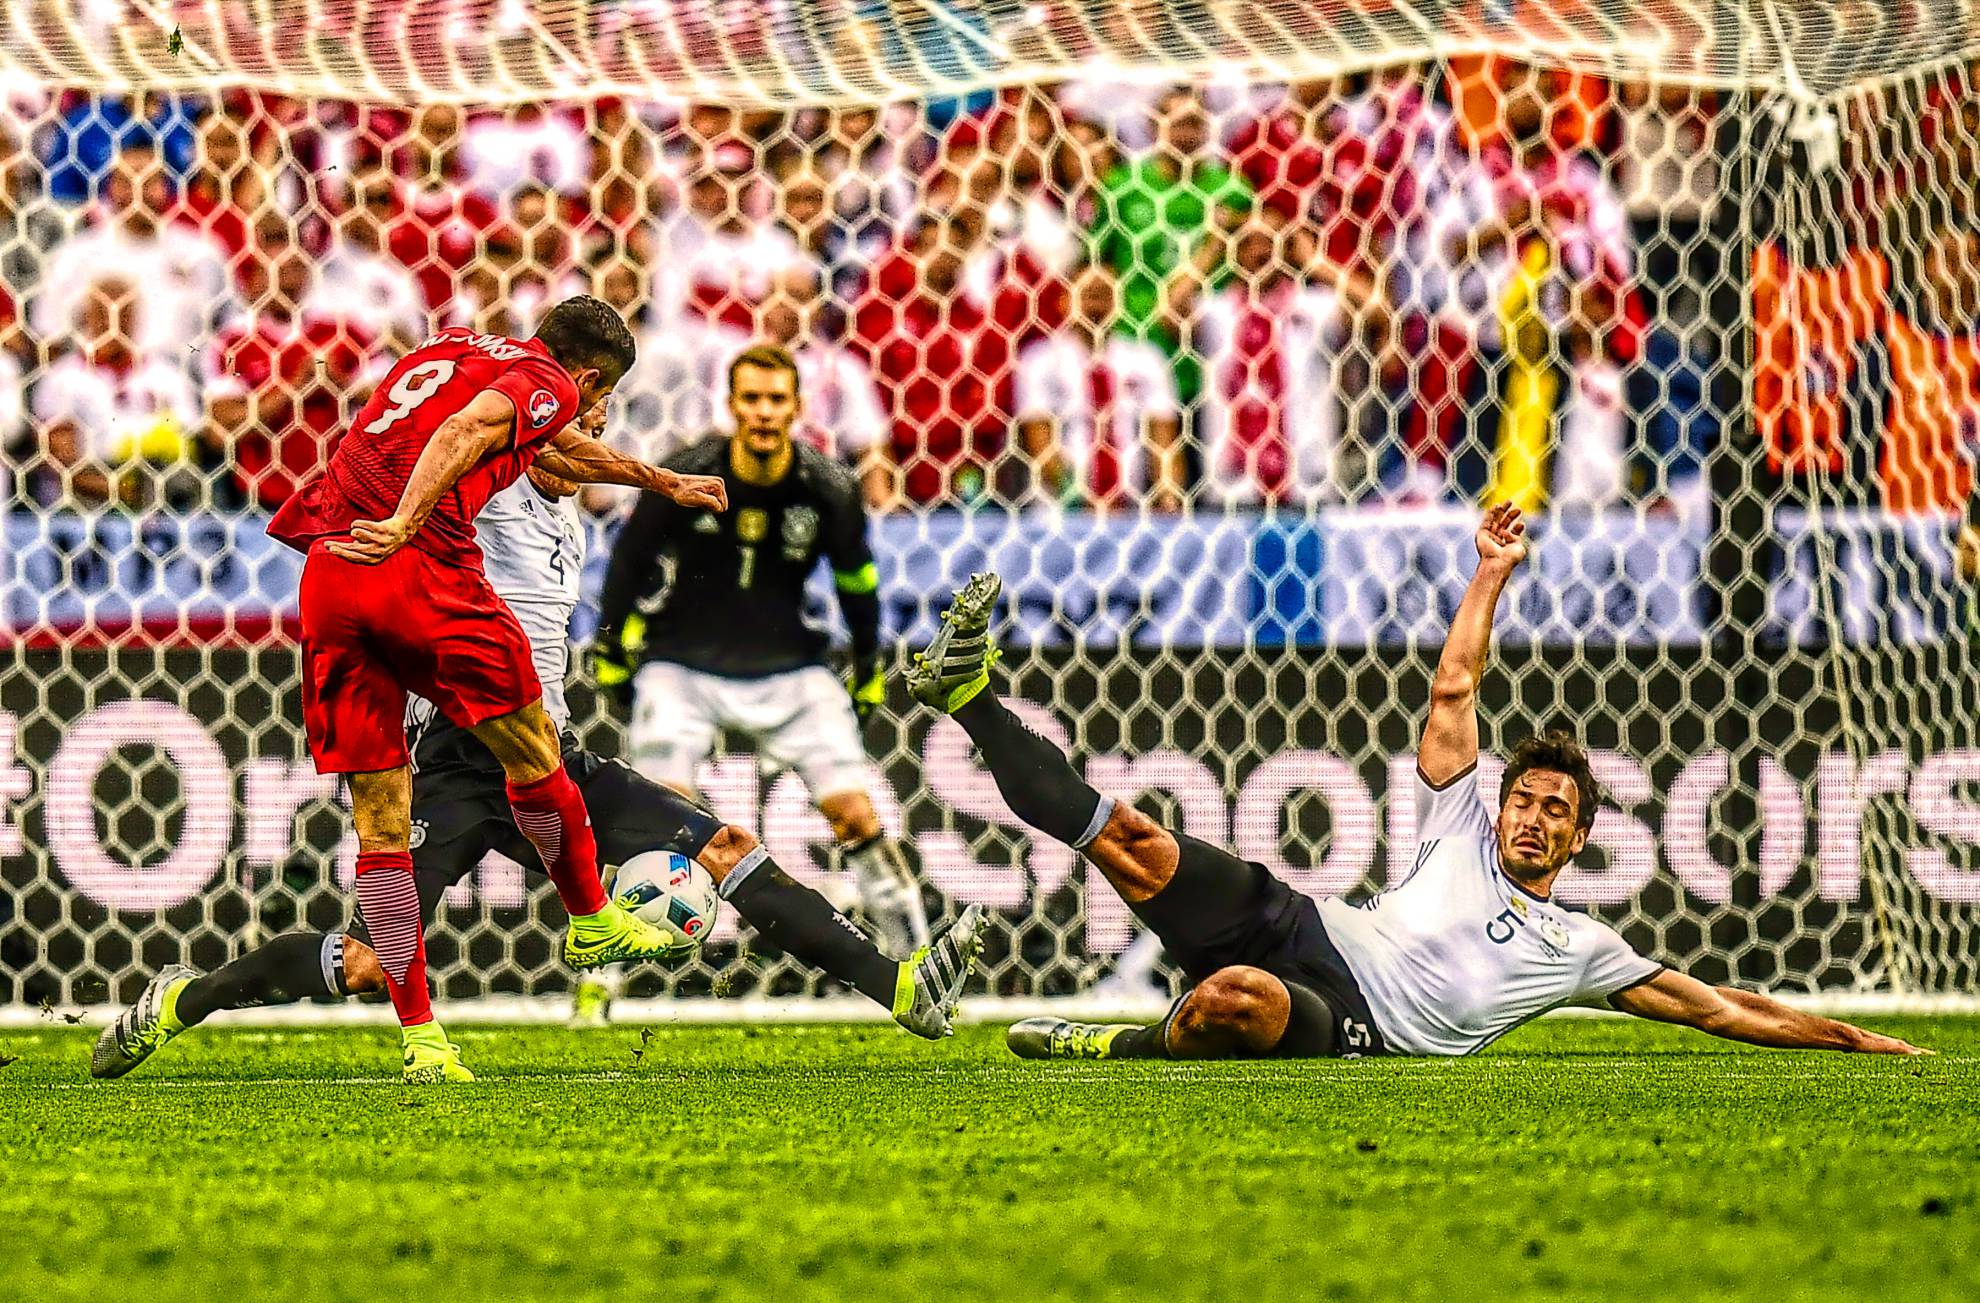 La diferencia de goles hizo líder a Alemania